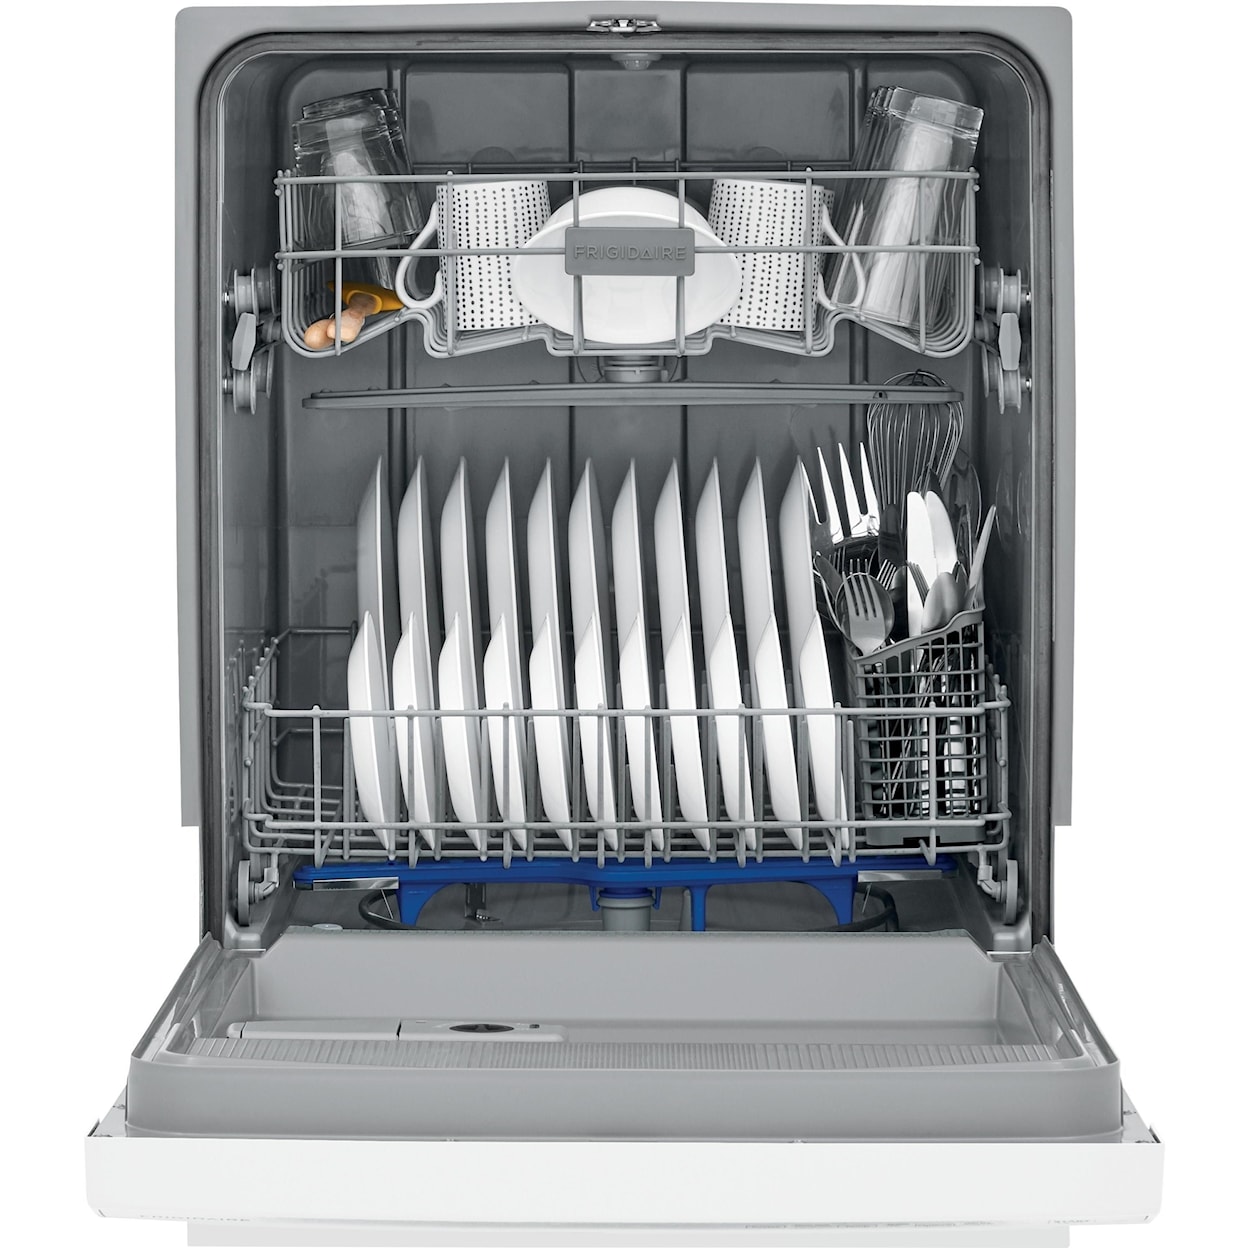 Frigidaire Dishwashers 24" Built-In Dishwasher